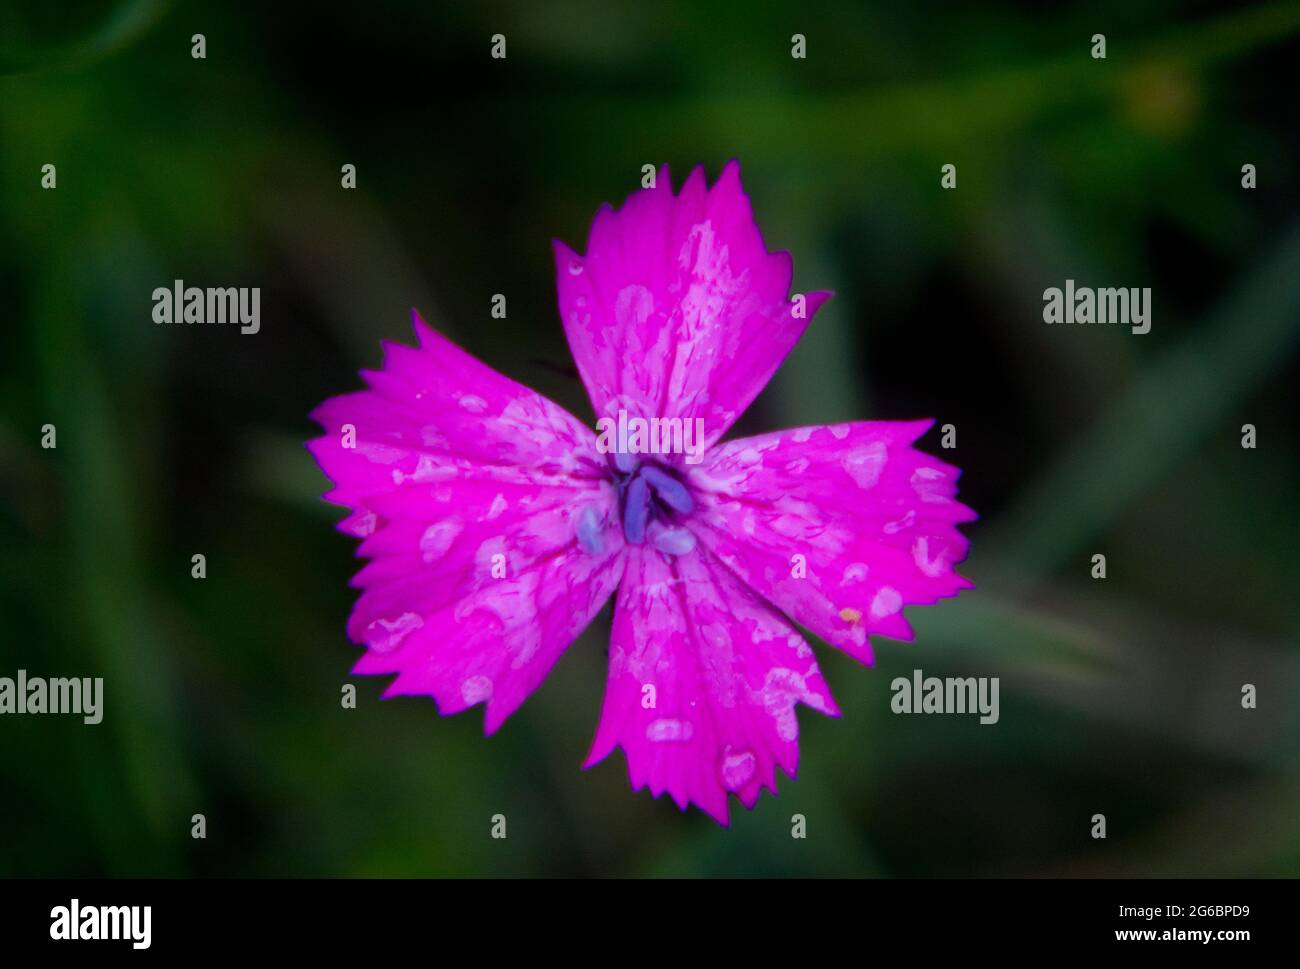 Rosa Blume von alpinem Pink, einige Wassertropfen darauf, isoliert vor einem dunklen Hintergrund Stockfoto